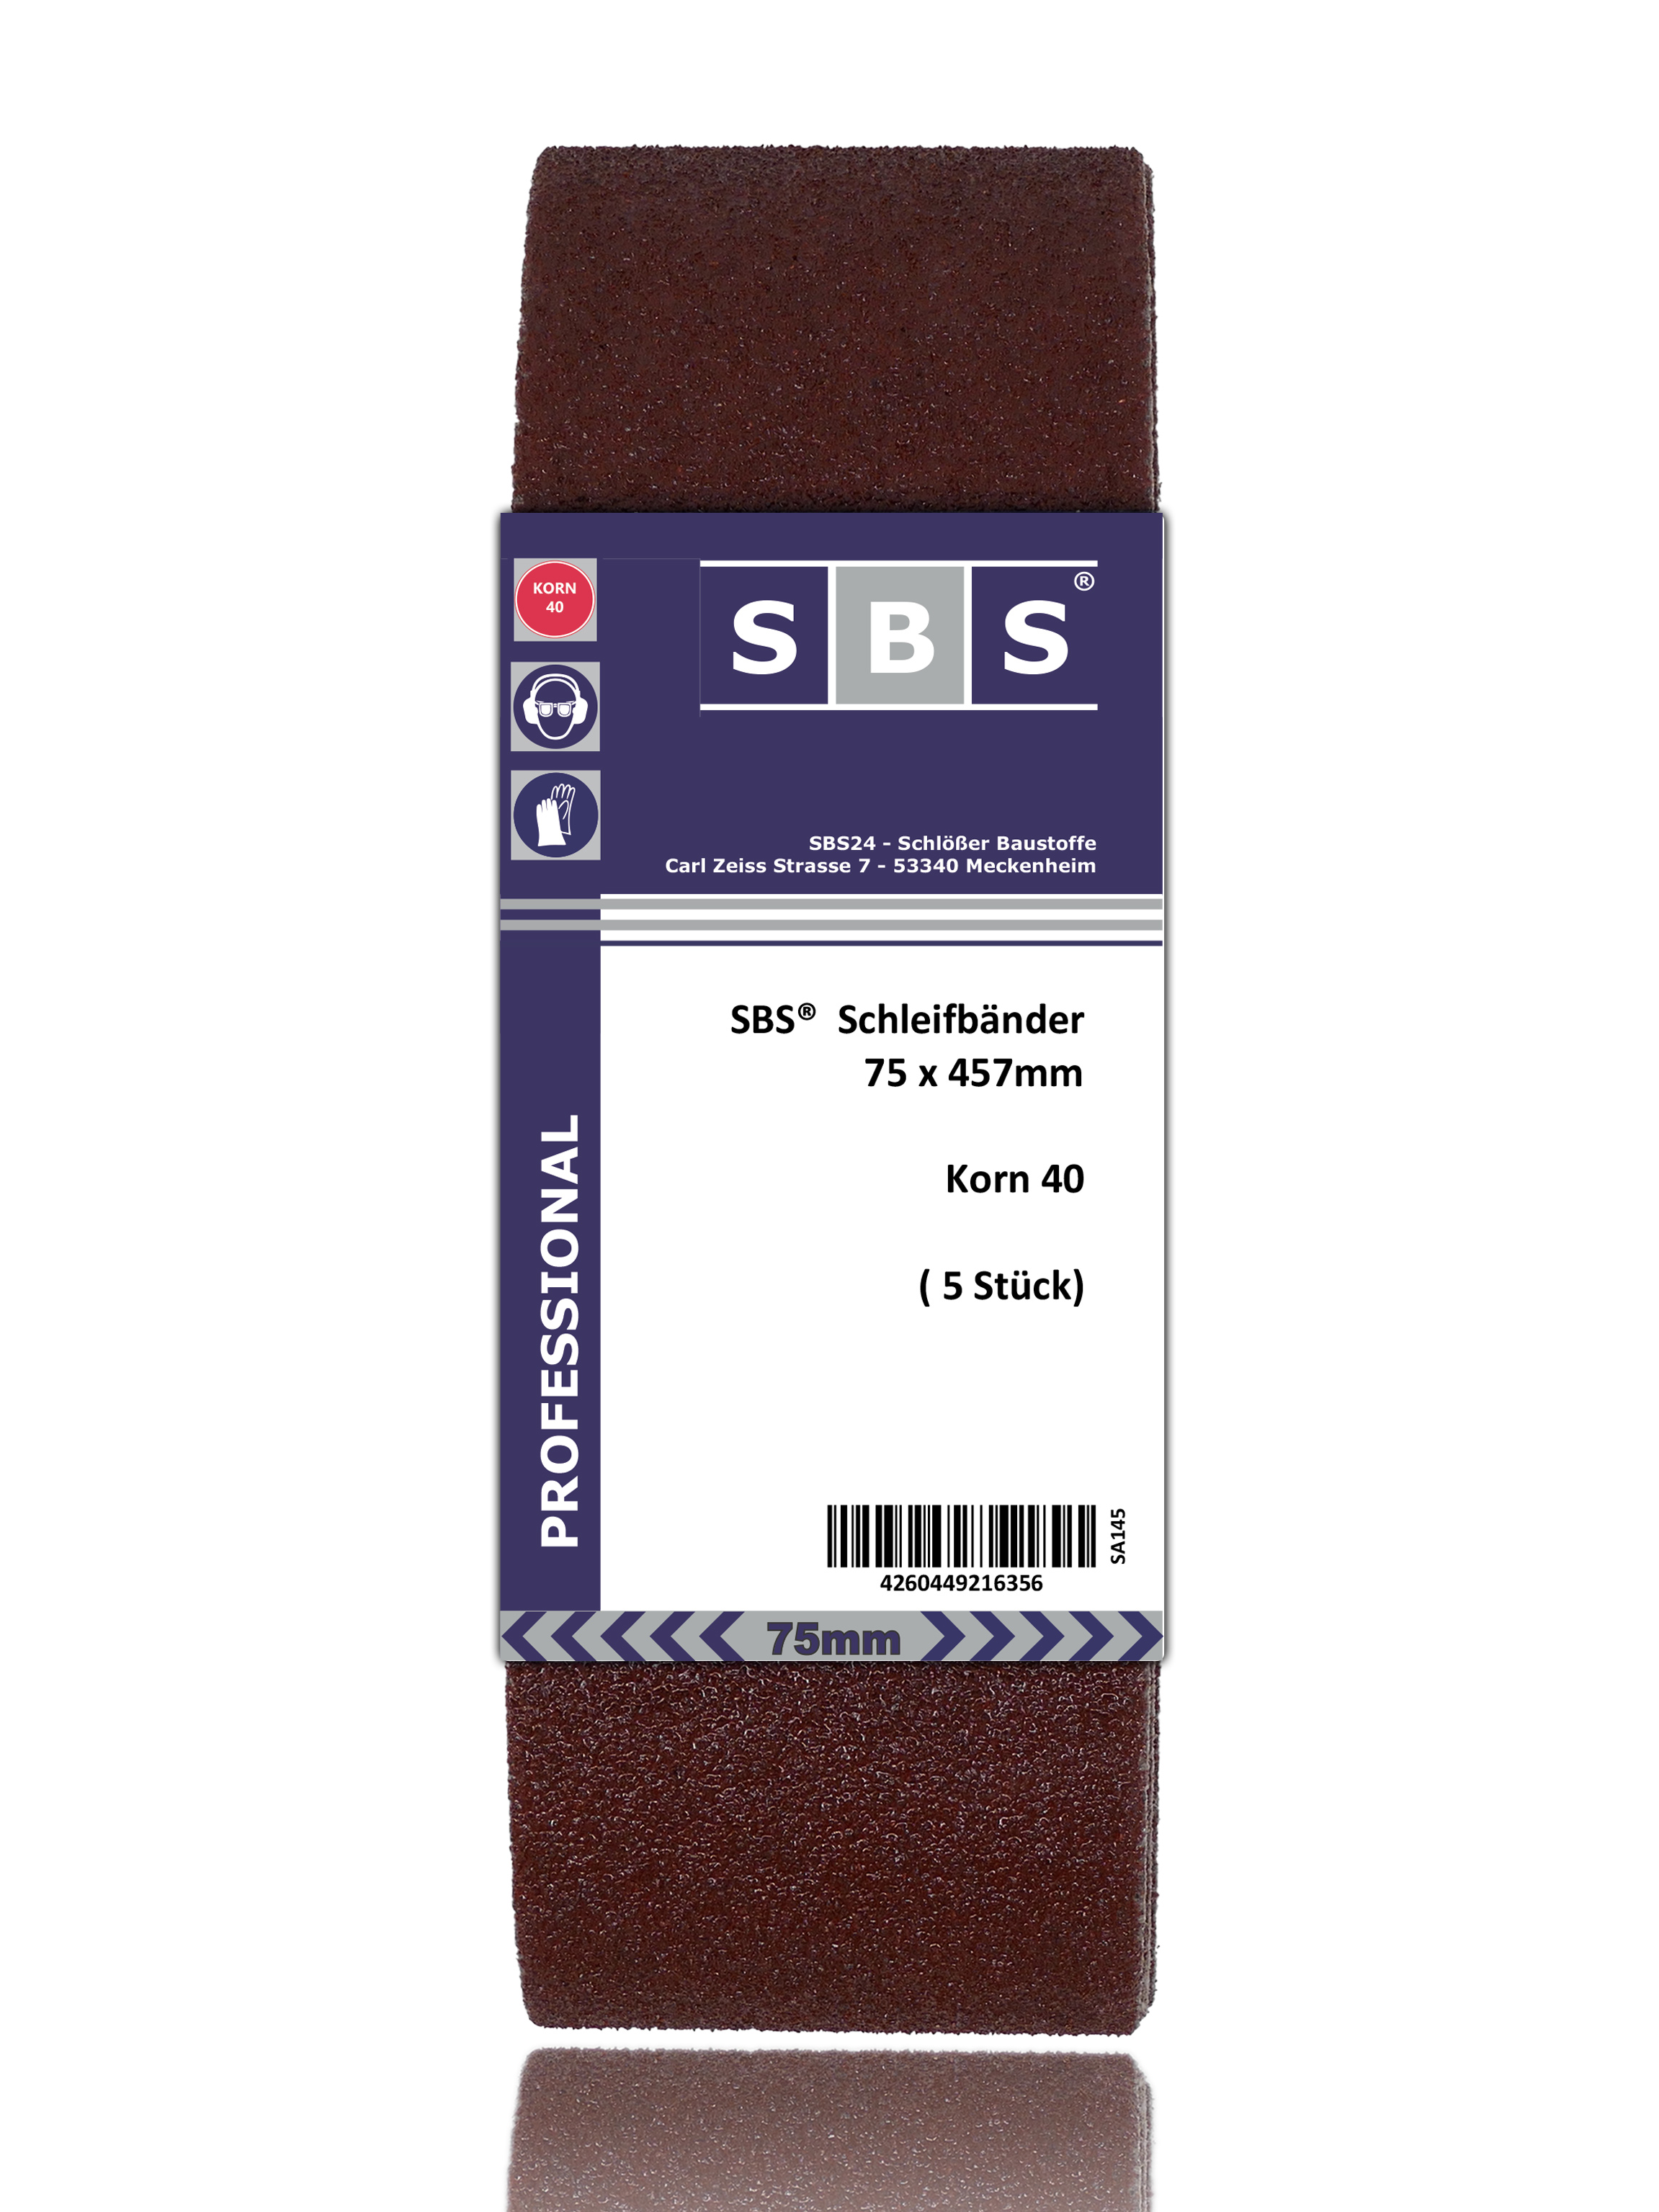 SBS® Schleifband 75 x 457mm 10 Stück Korn 40 Gewebe Schleifbänder P40 Bänder 